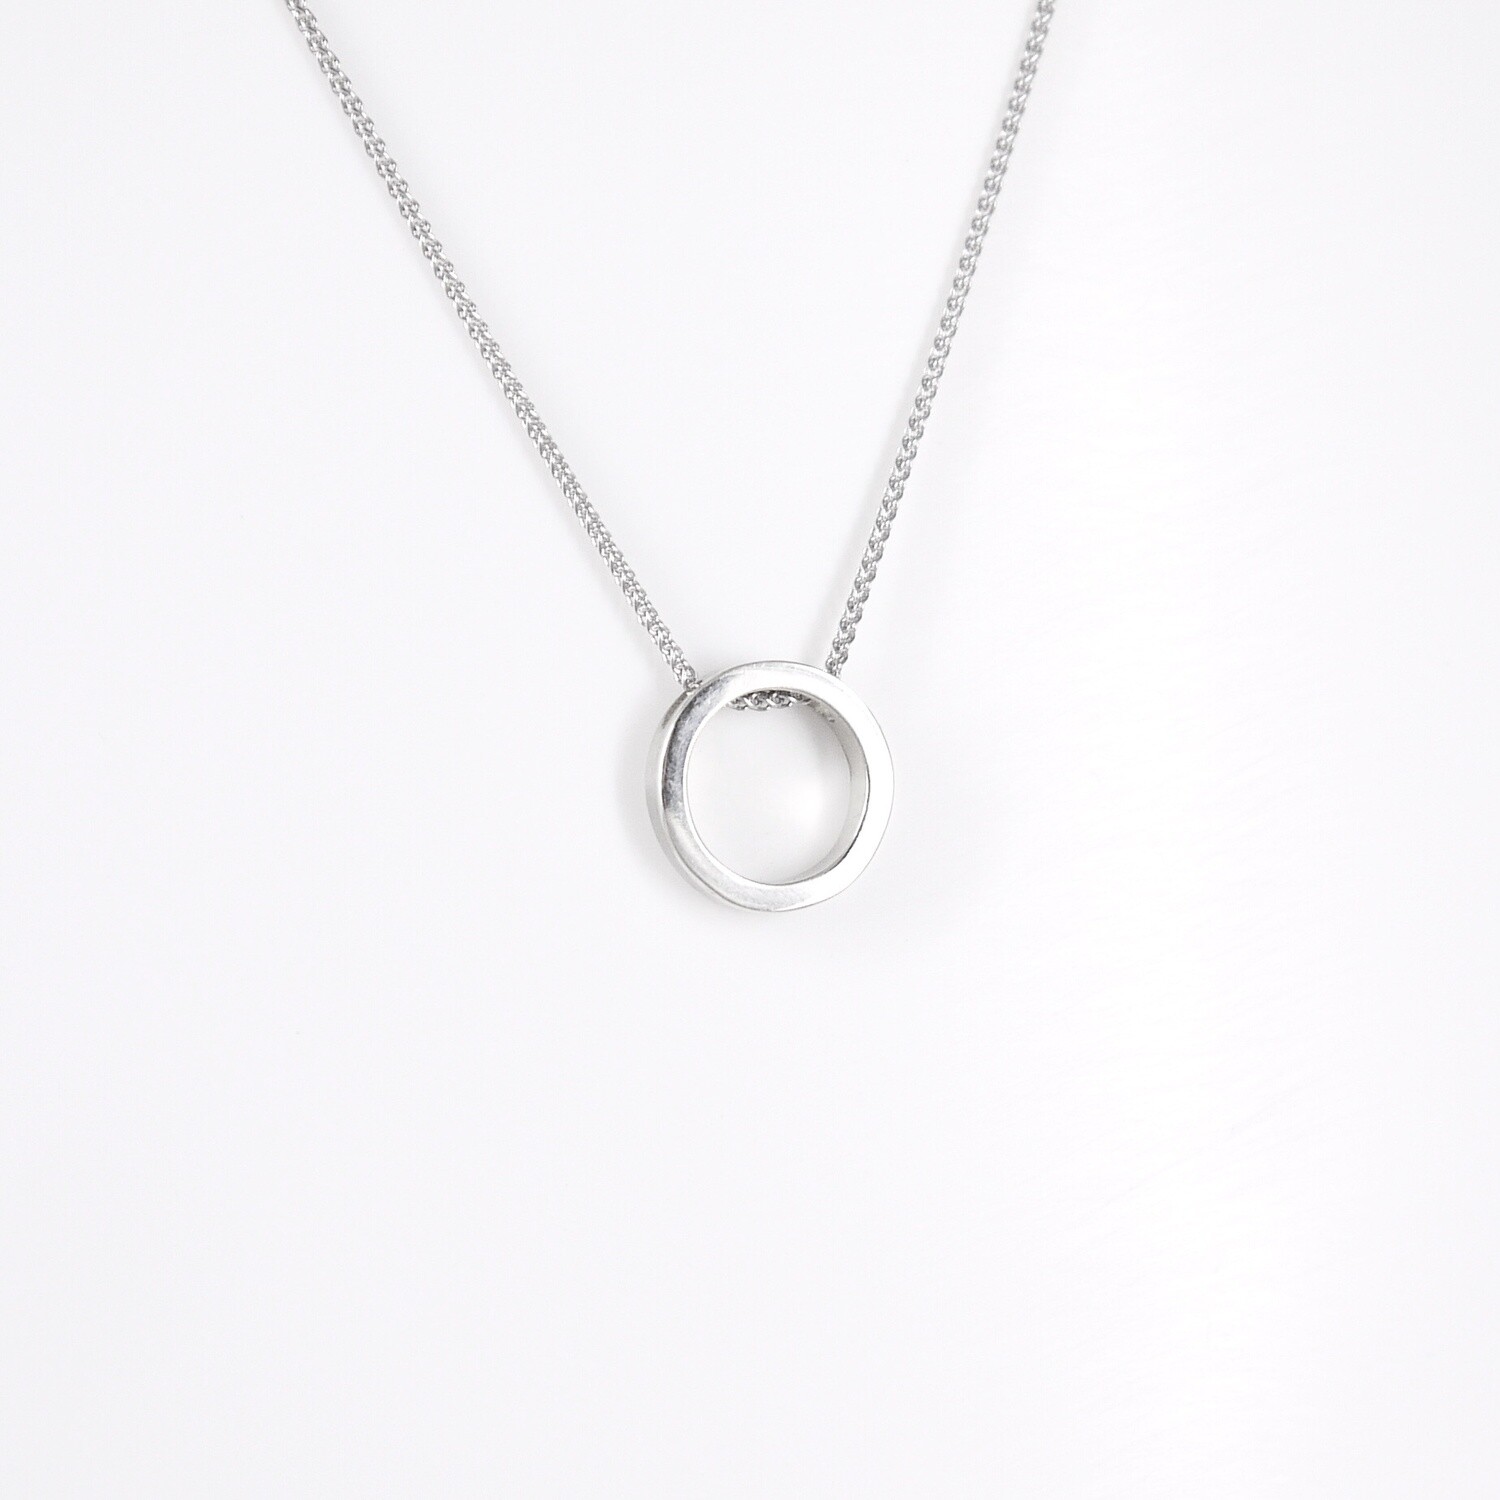 Halo pendant in silver - small